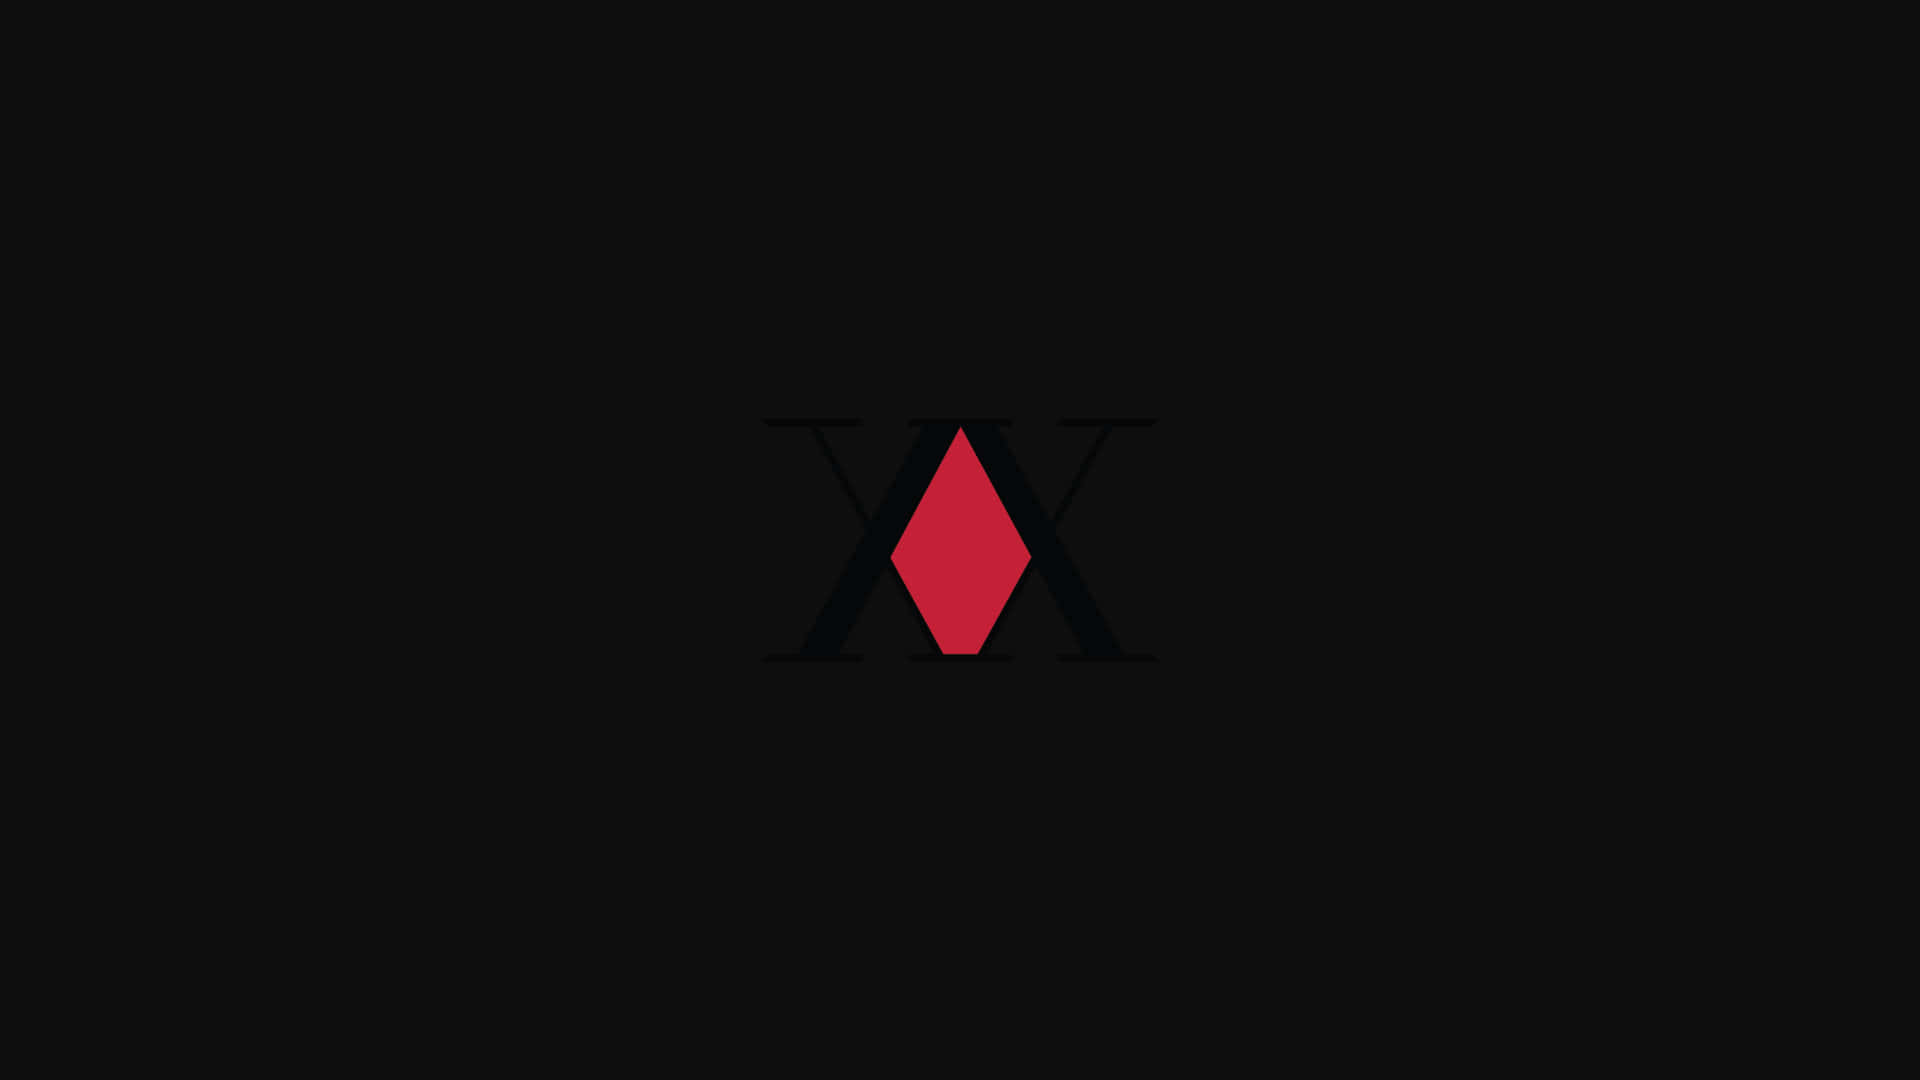 Jaktx Jakt Logo Röd Pyramid. Wallpaper